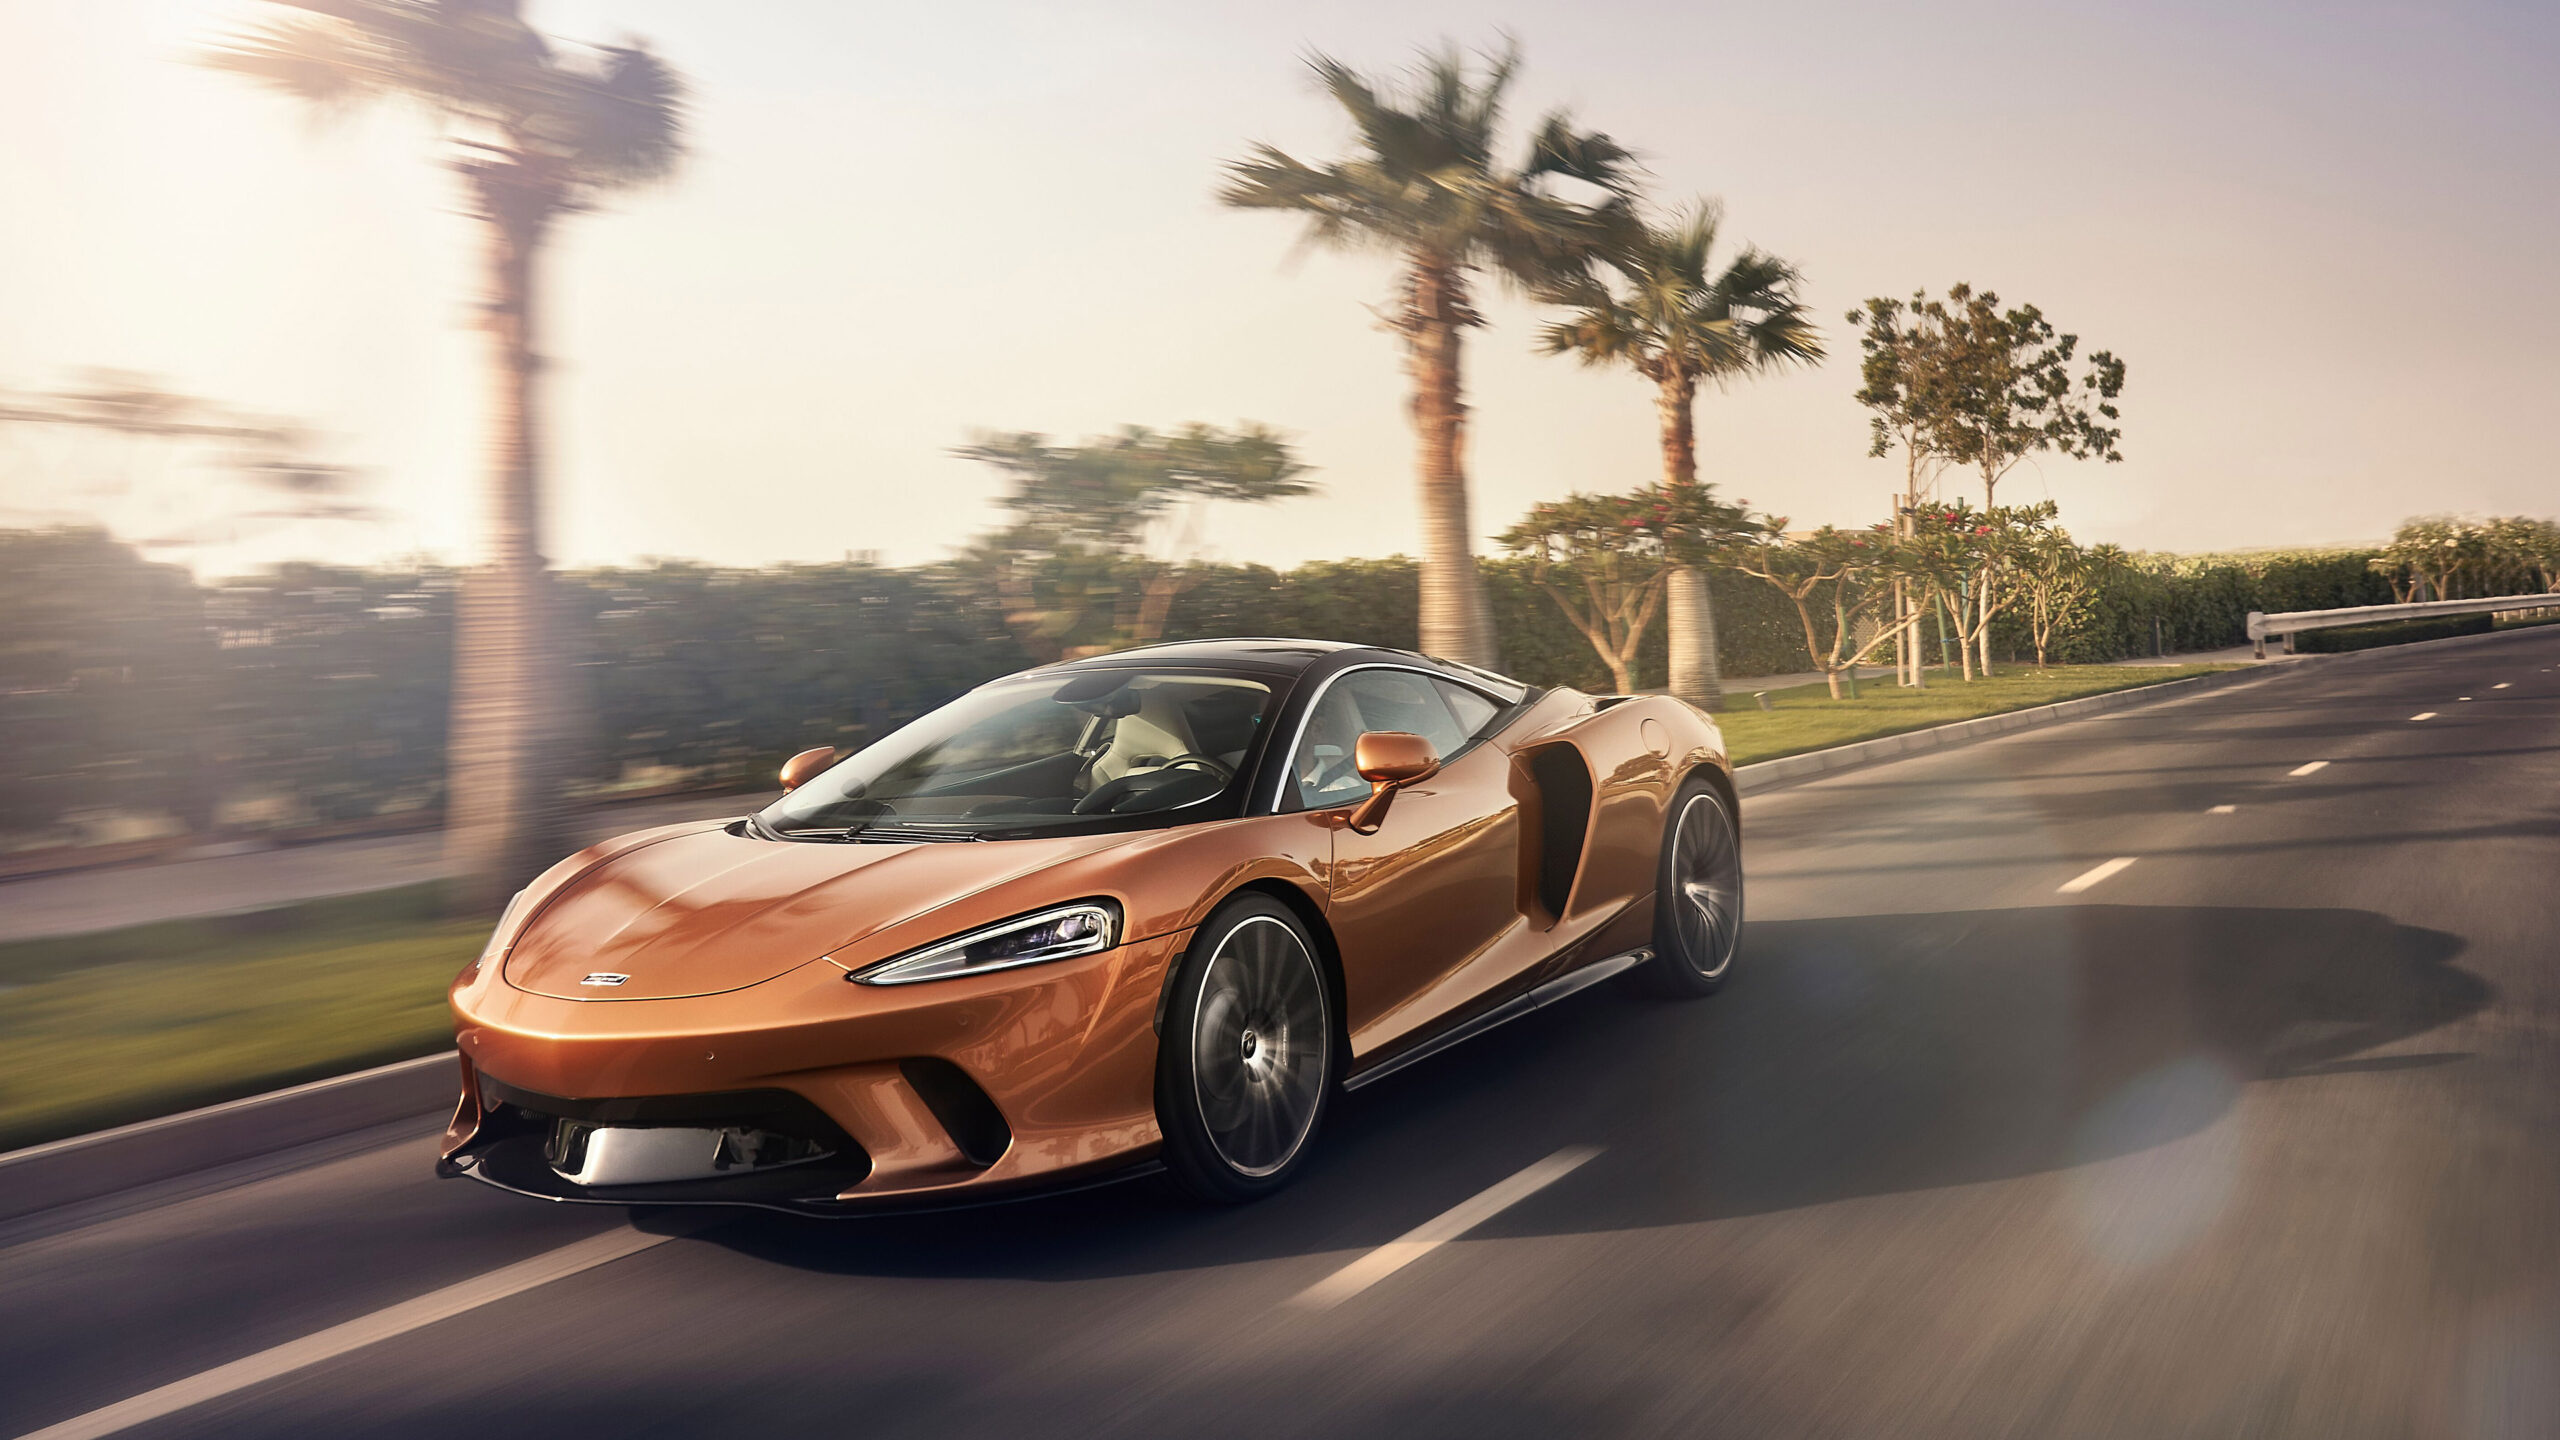 McLaren GT, Exquisite performance, Automotive elegance, McLaren wallpapers, 2560x1440 HD Desktop